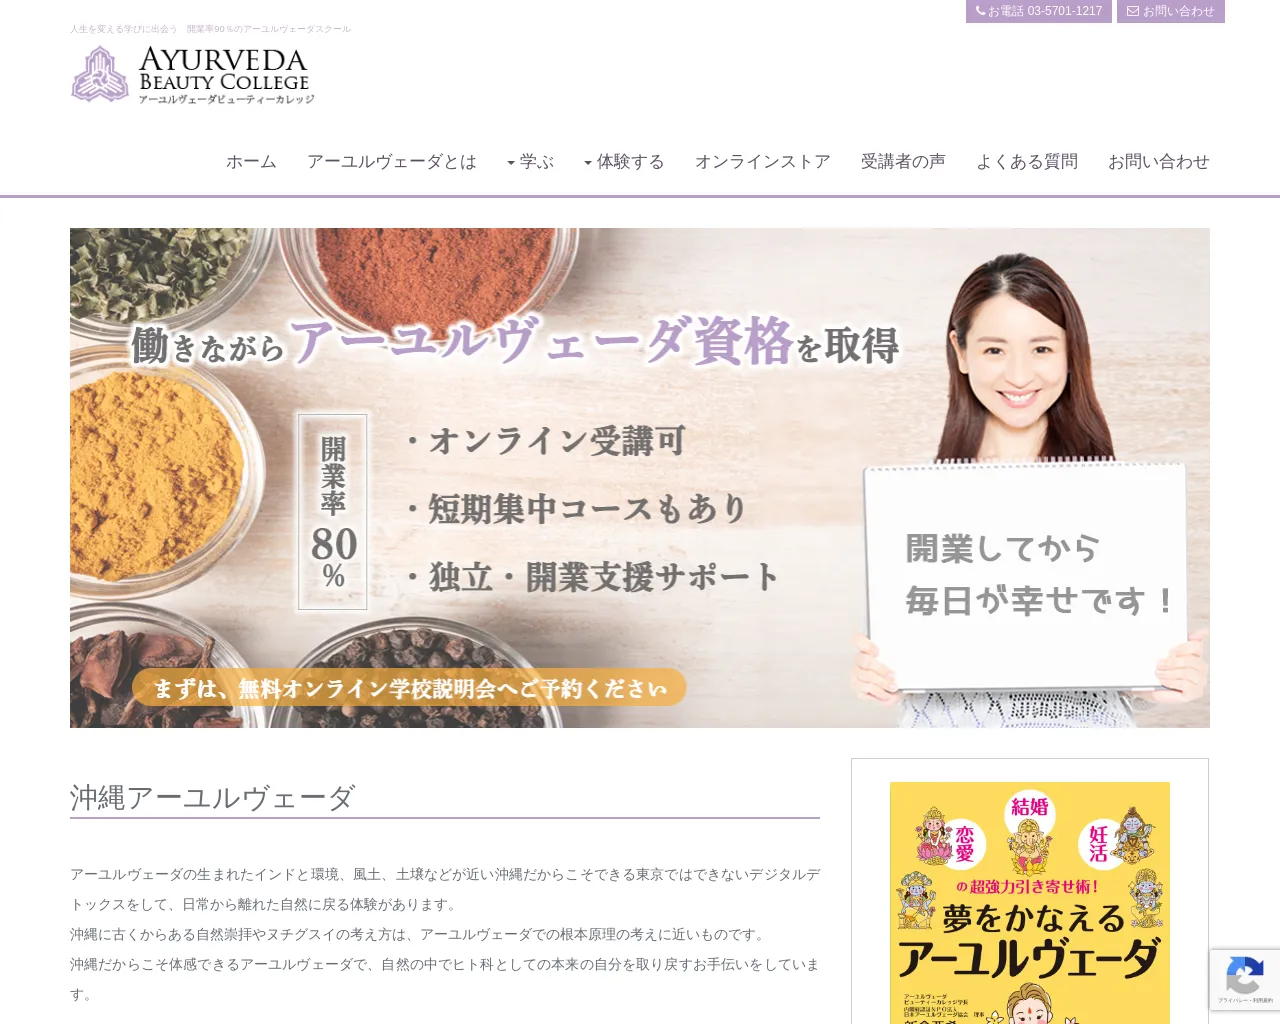 アーユルヴェーダビューティーカレッジ沖縄校(Ayurveda Beauty College OKINAWA) site